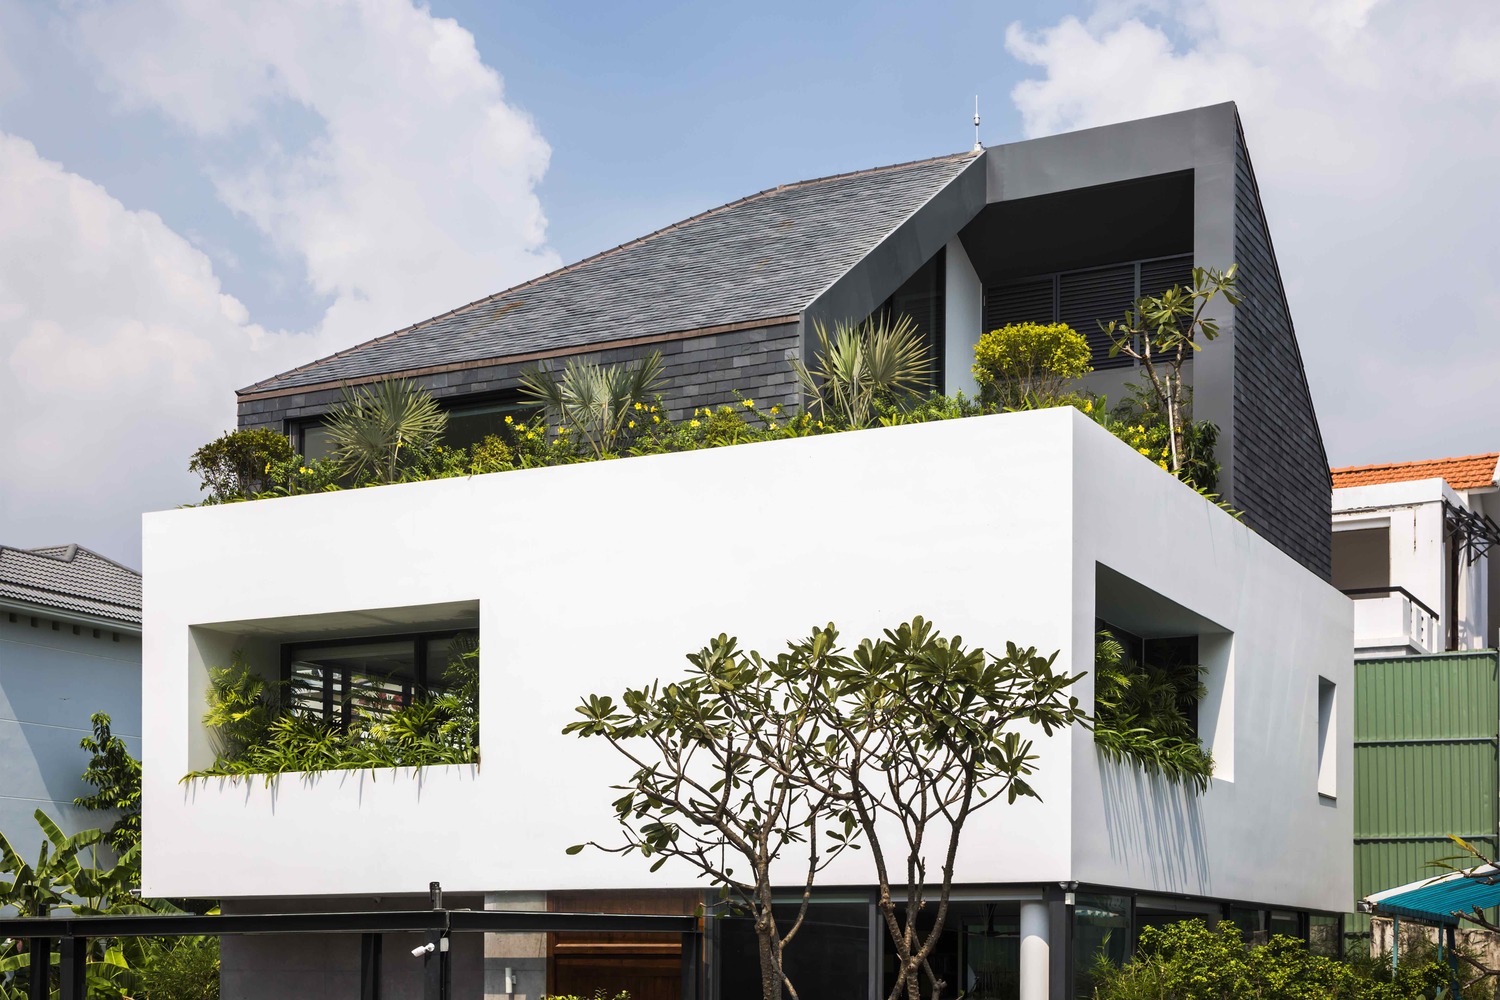 Ngôi nhà như khối lập phương trắng độc đáo cùng sắc xanh cây cối nổi bật giữa “khu nhà giàu” Sài Gòn - Ảnh 3